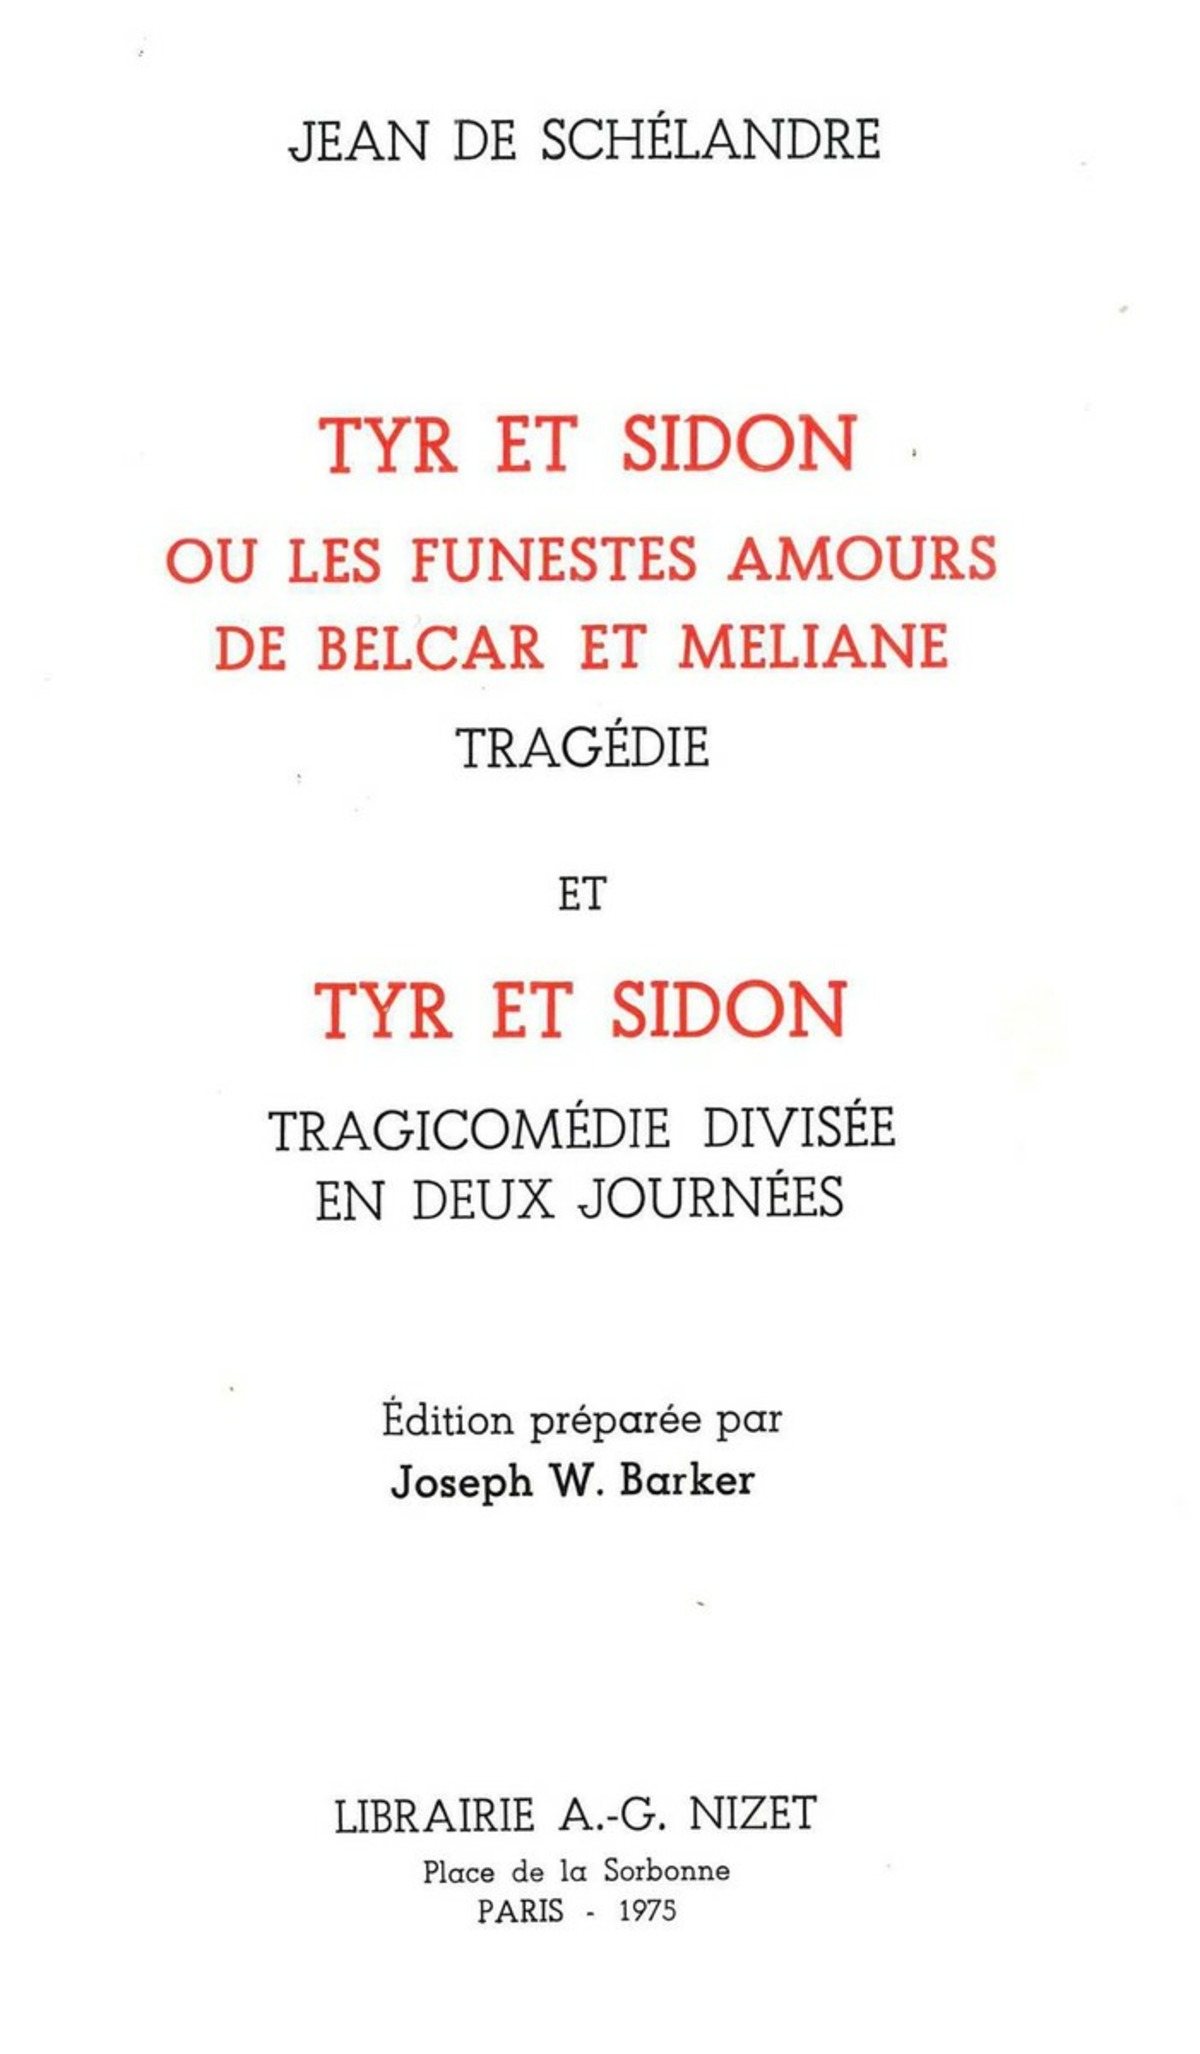 Tyr et Sidon ou les Funestes amours de Belcar et Méliane, tragédie, et Tyr et Sidon, tragicomédie divisée en deux journées